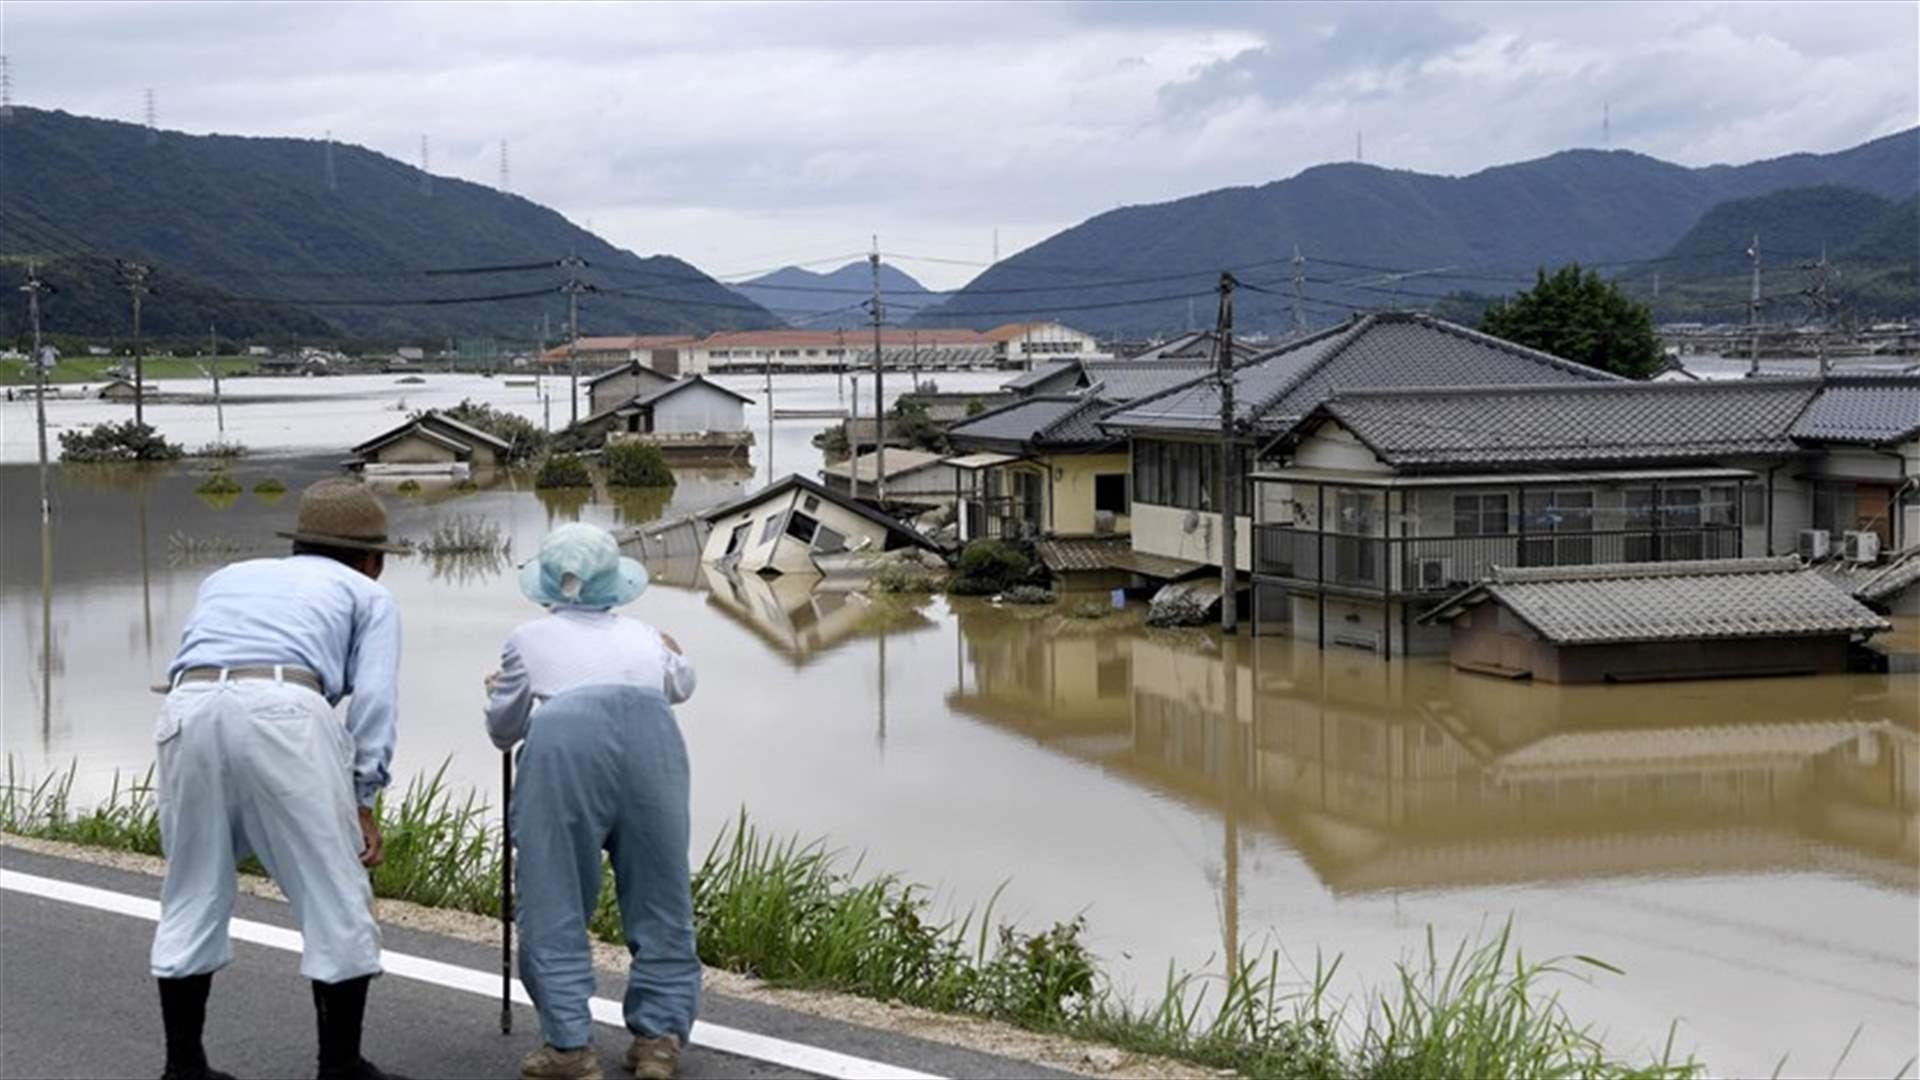 بعد الفيضانات... اليابان تعاني من الحر الشديد